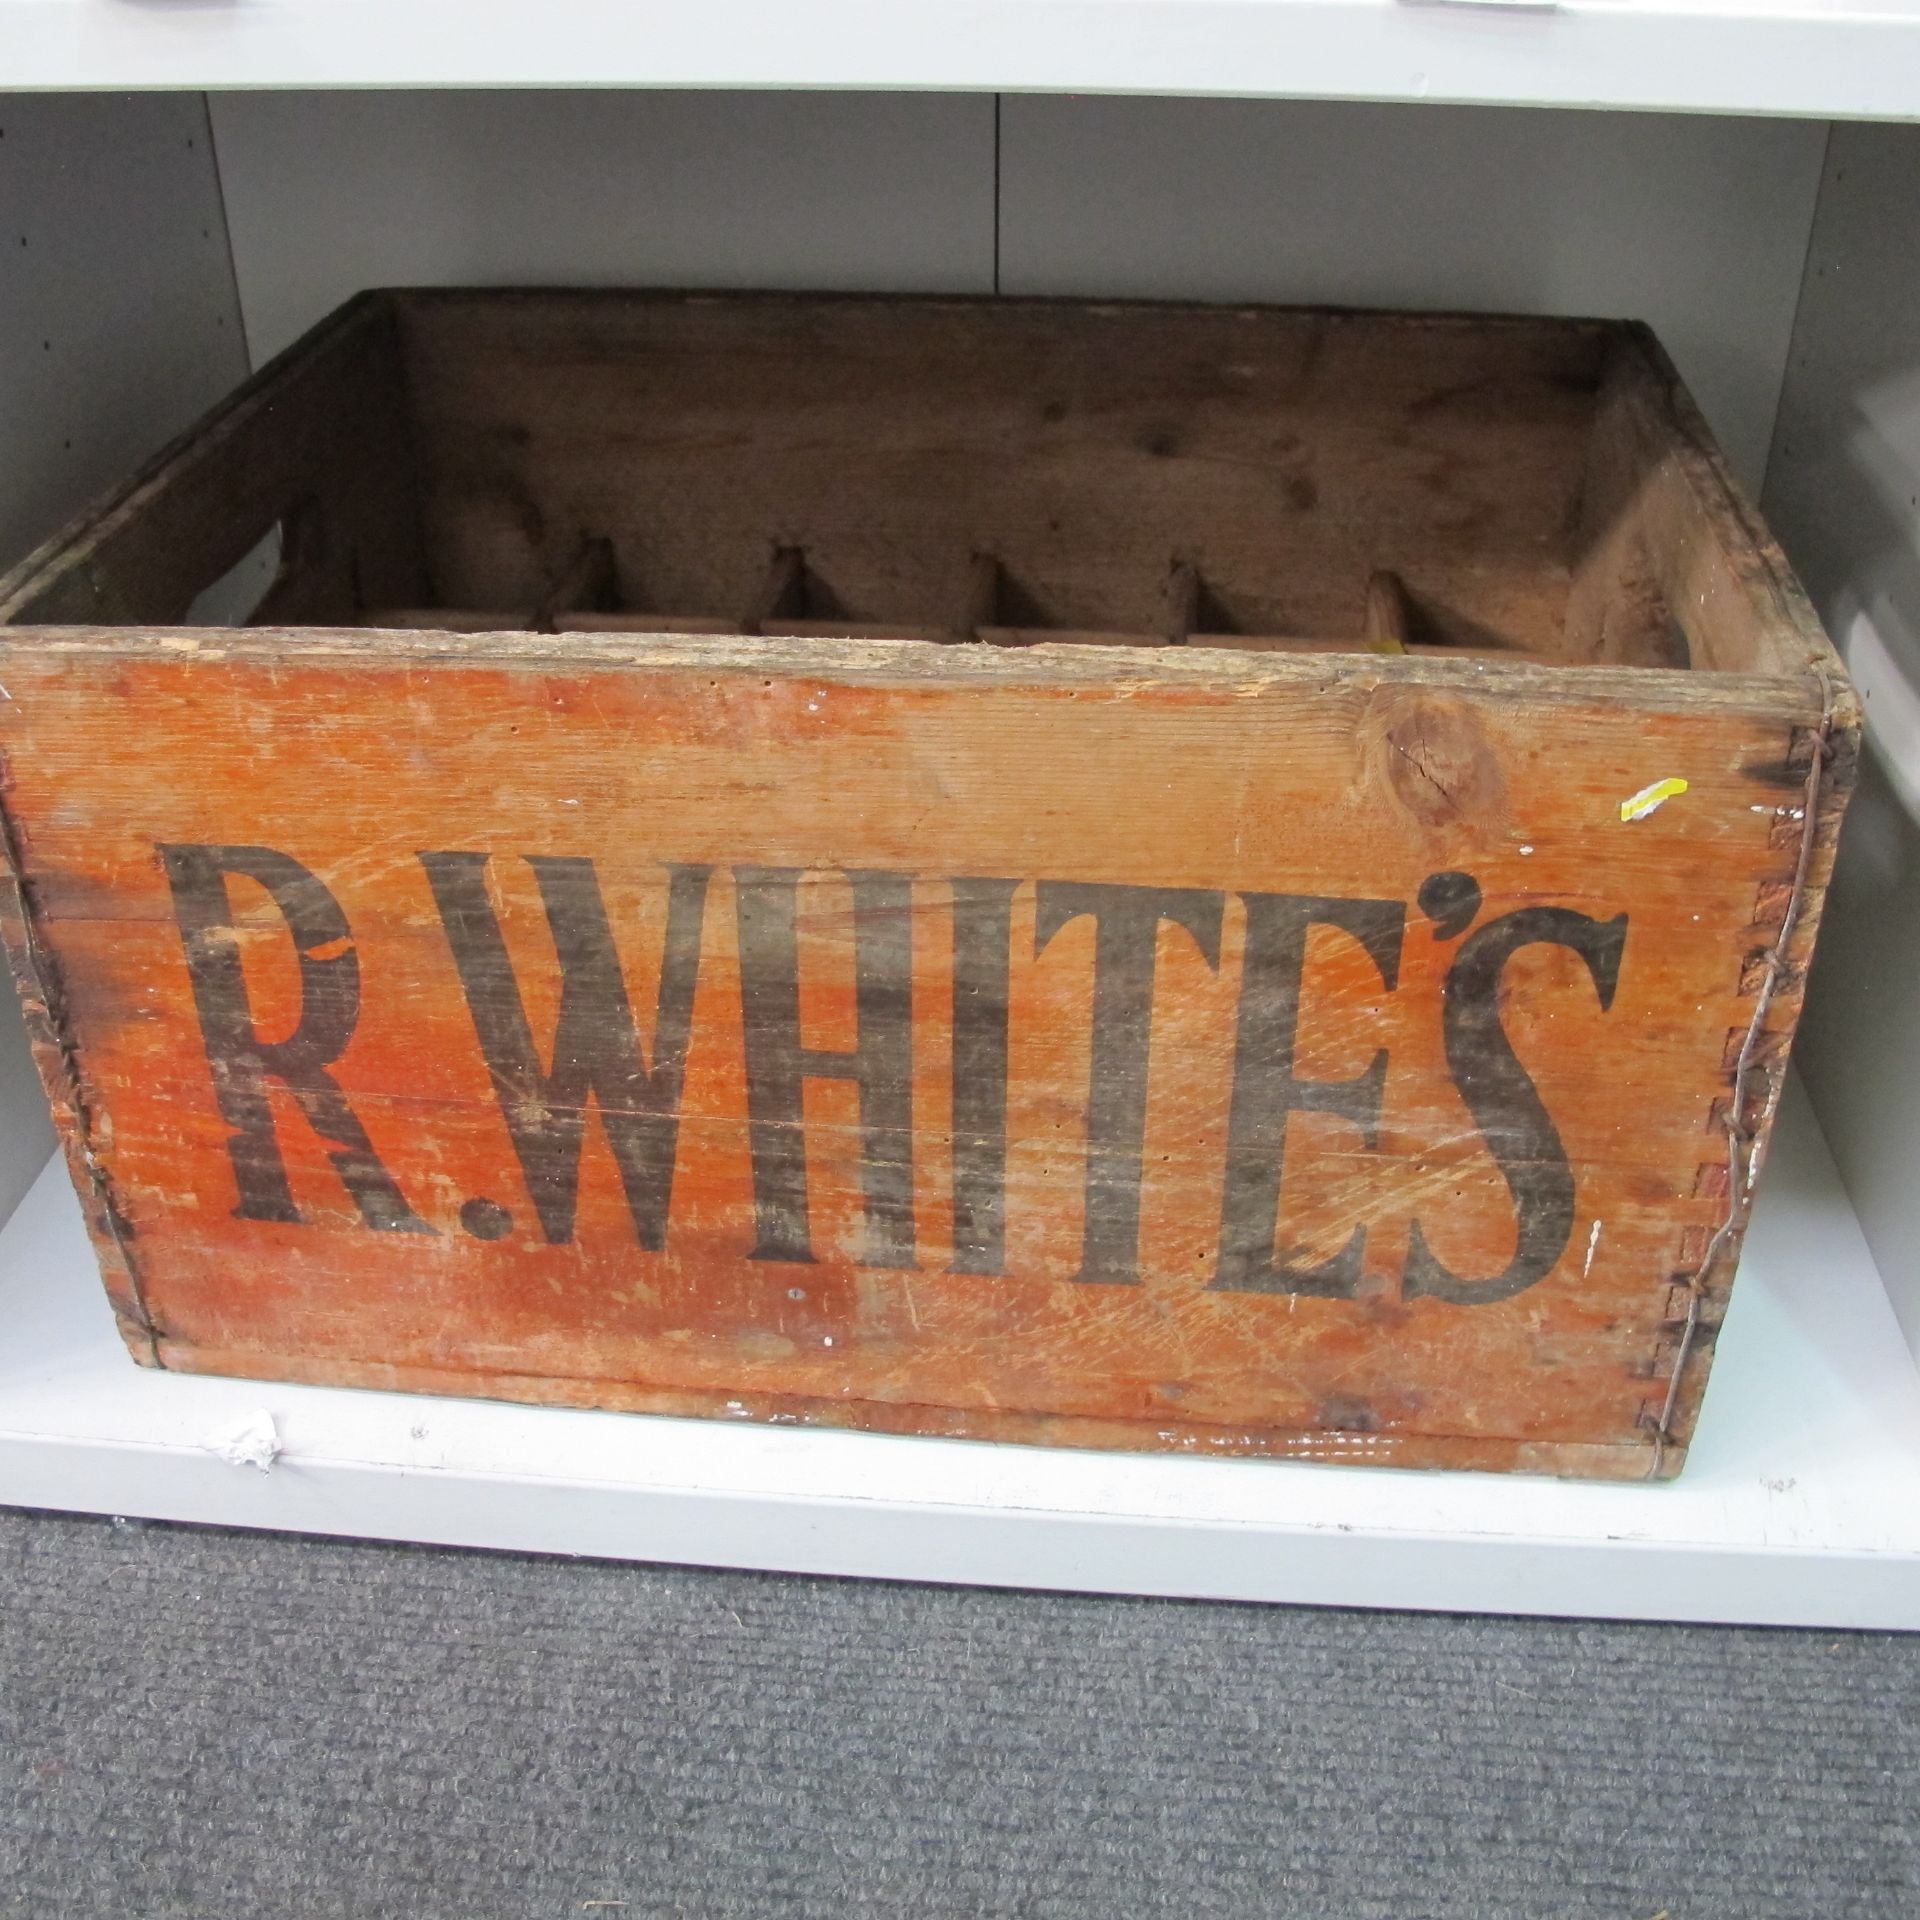 R Whites Crate (23cm x 42cm x 28cm) (est £10-£15)